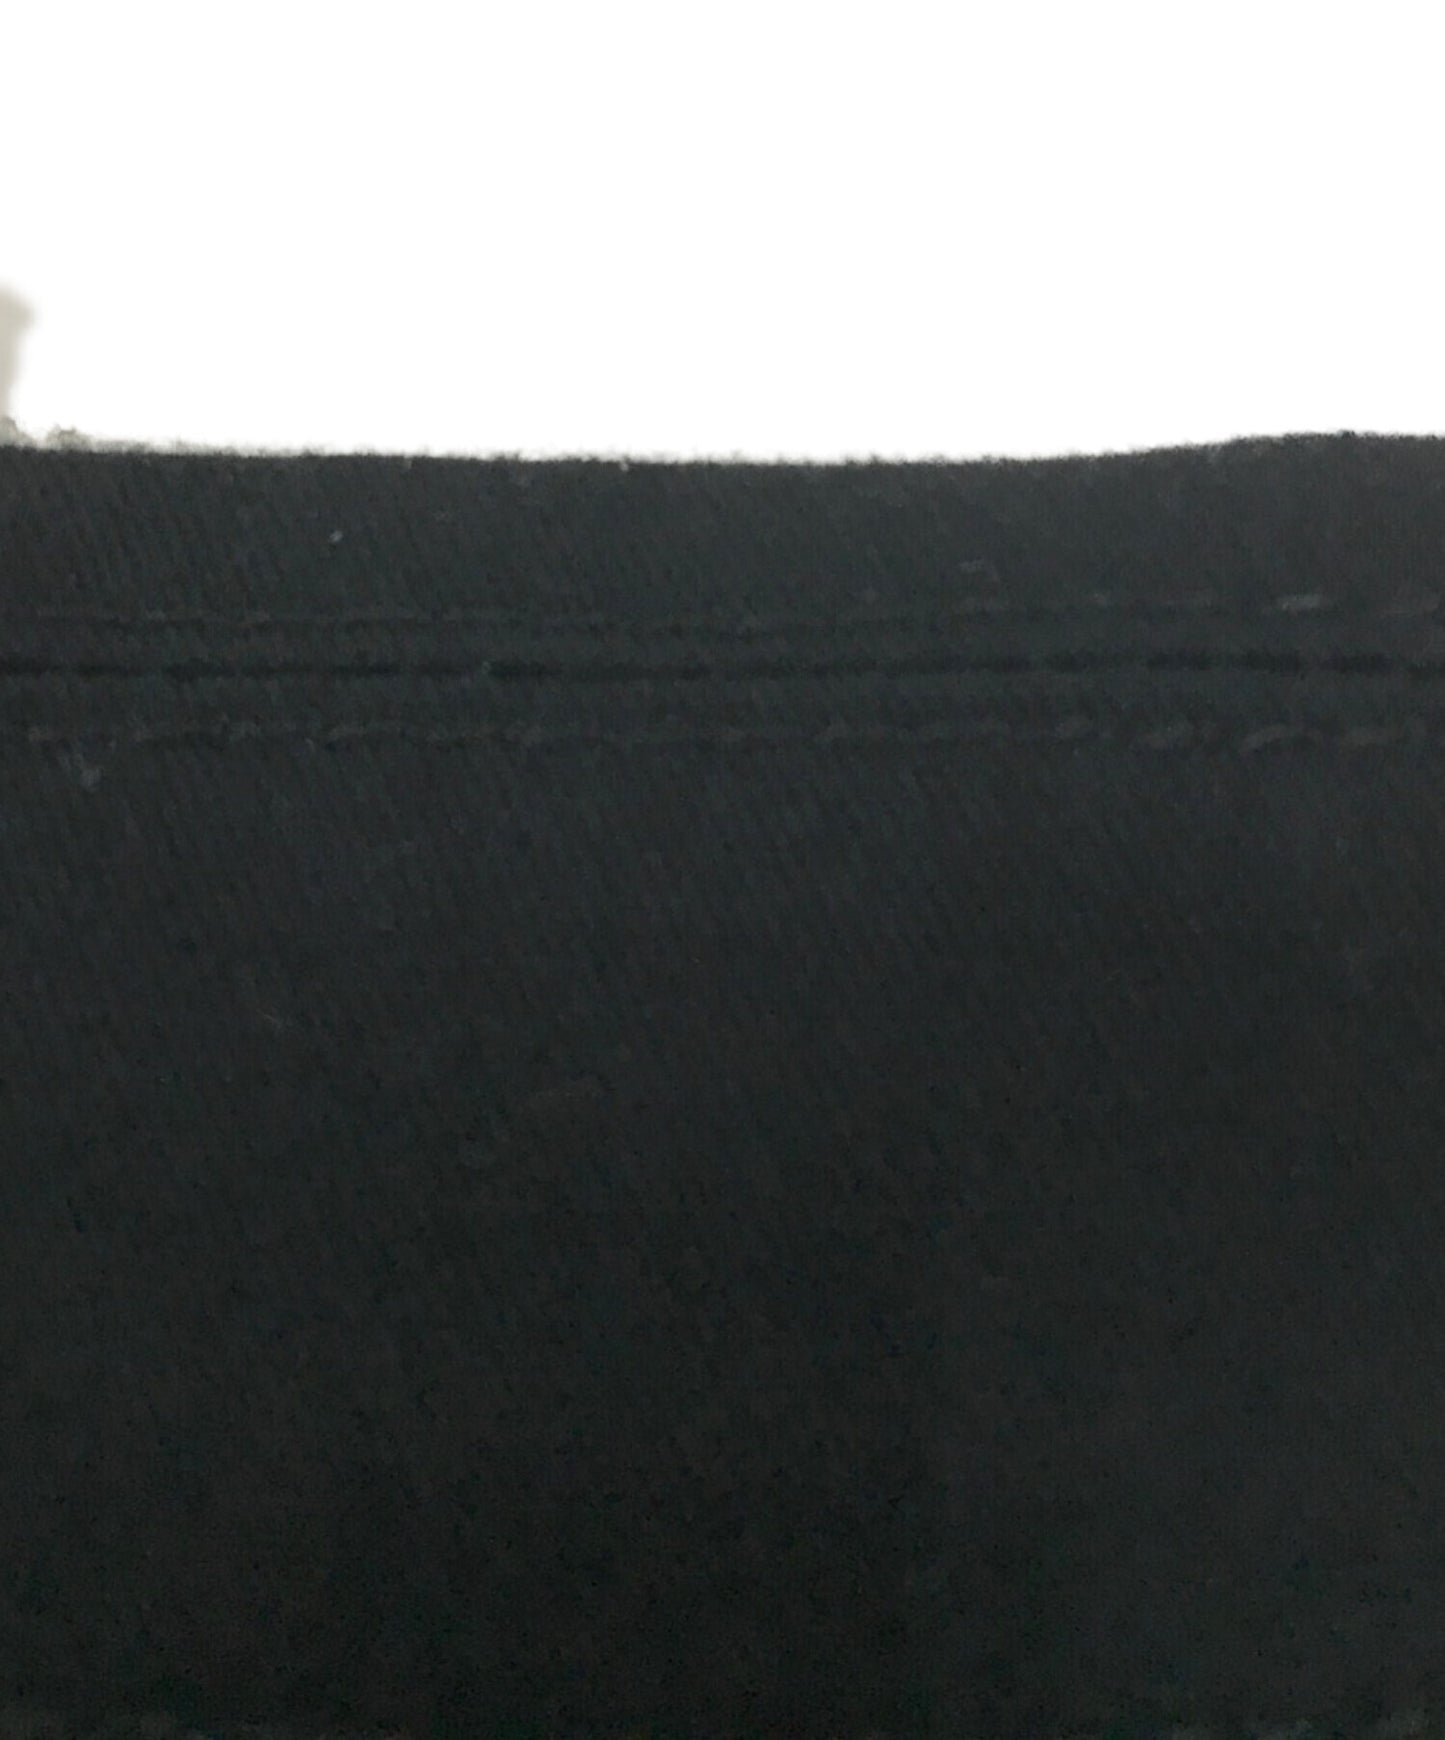 卧底拉链式衬衫聚酯和棉拉链夹克UC1C4206-2